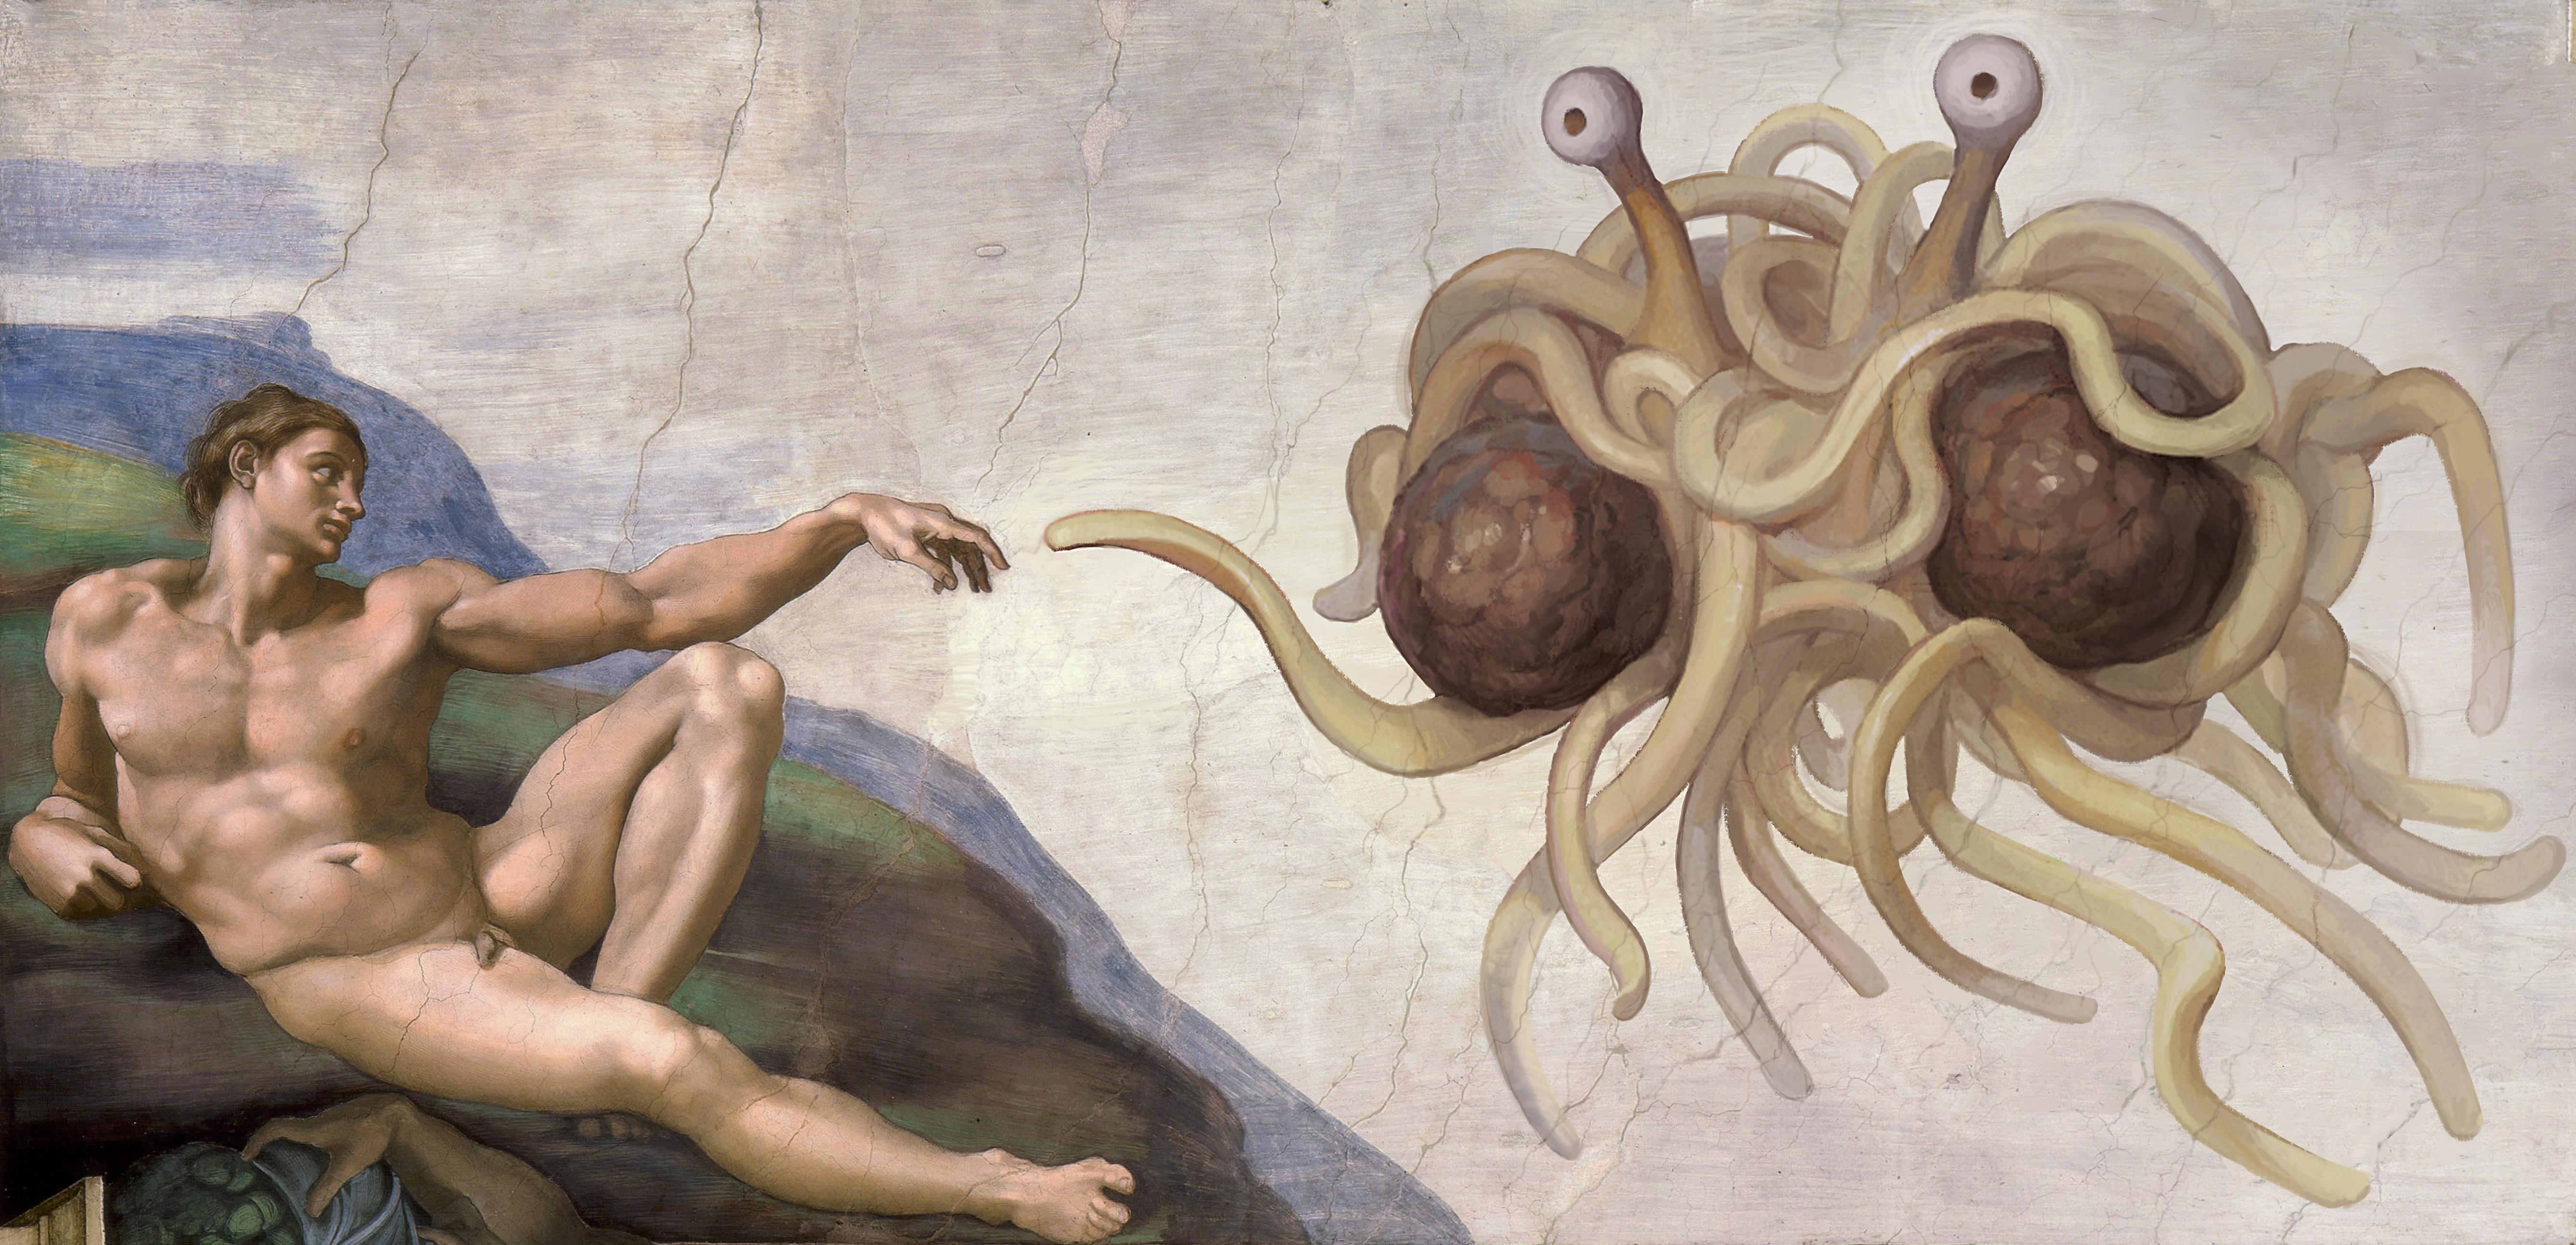 Ilustración del "Pastafarismo".